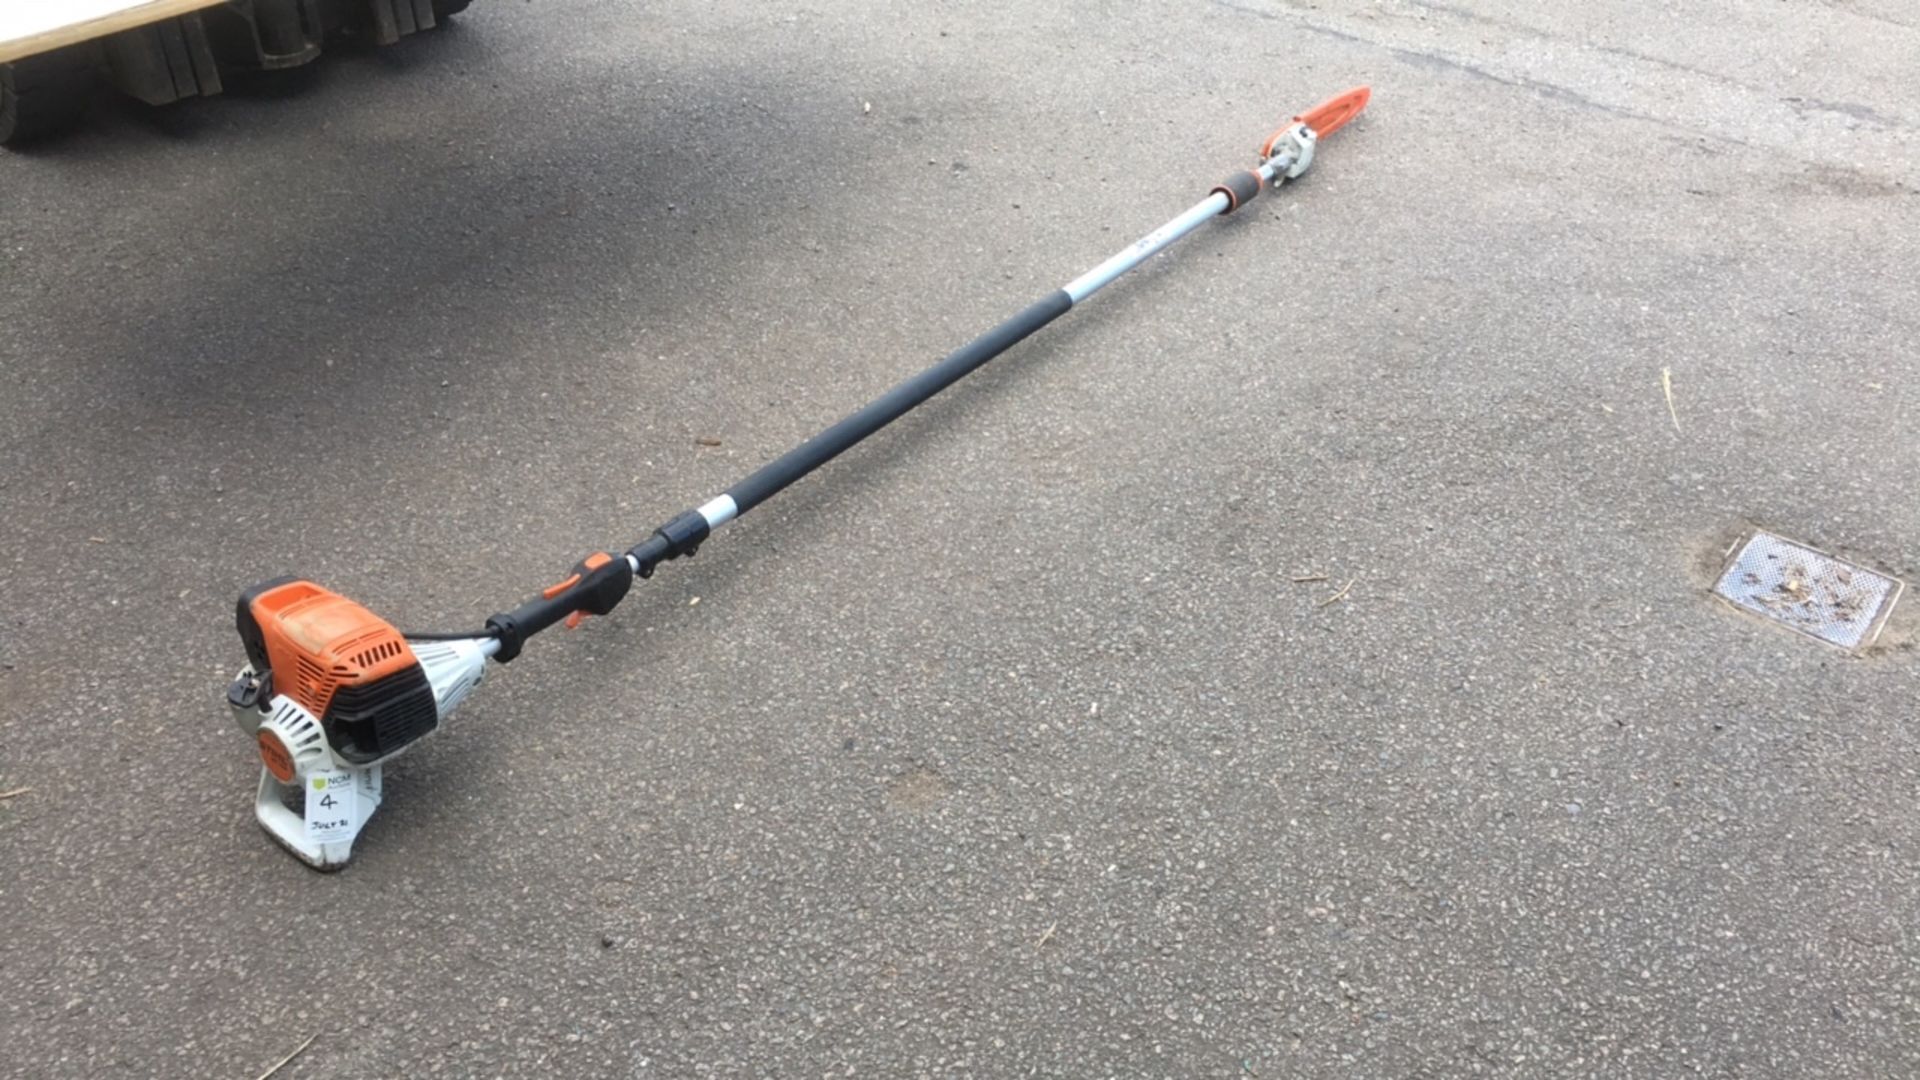 Stihl HT133 pole saw (A944914) - Image 6 of 7